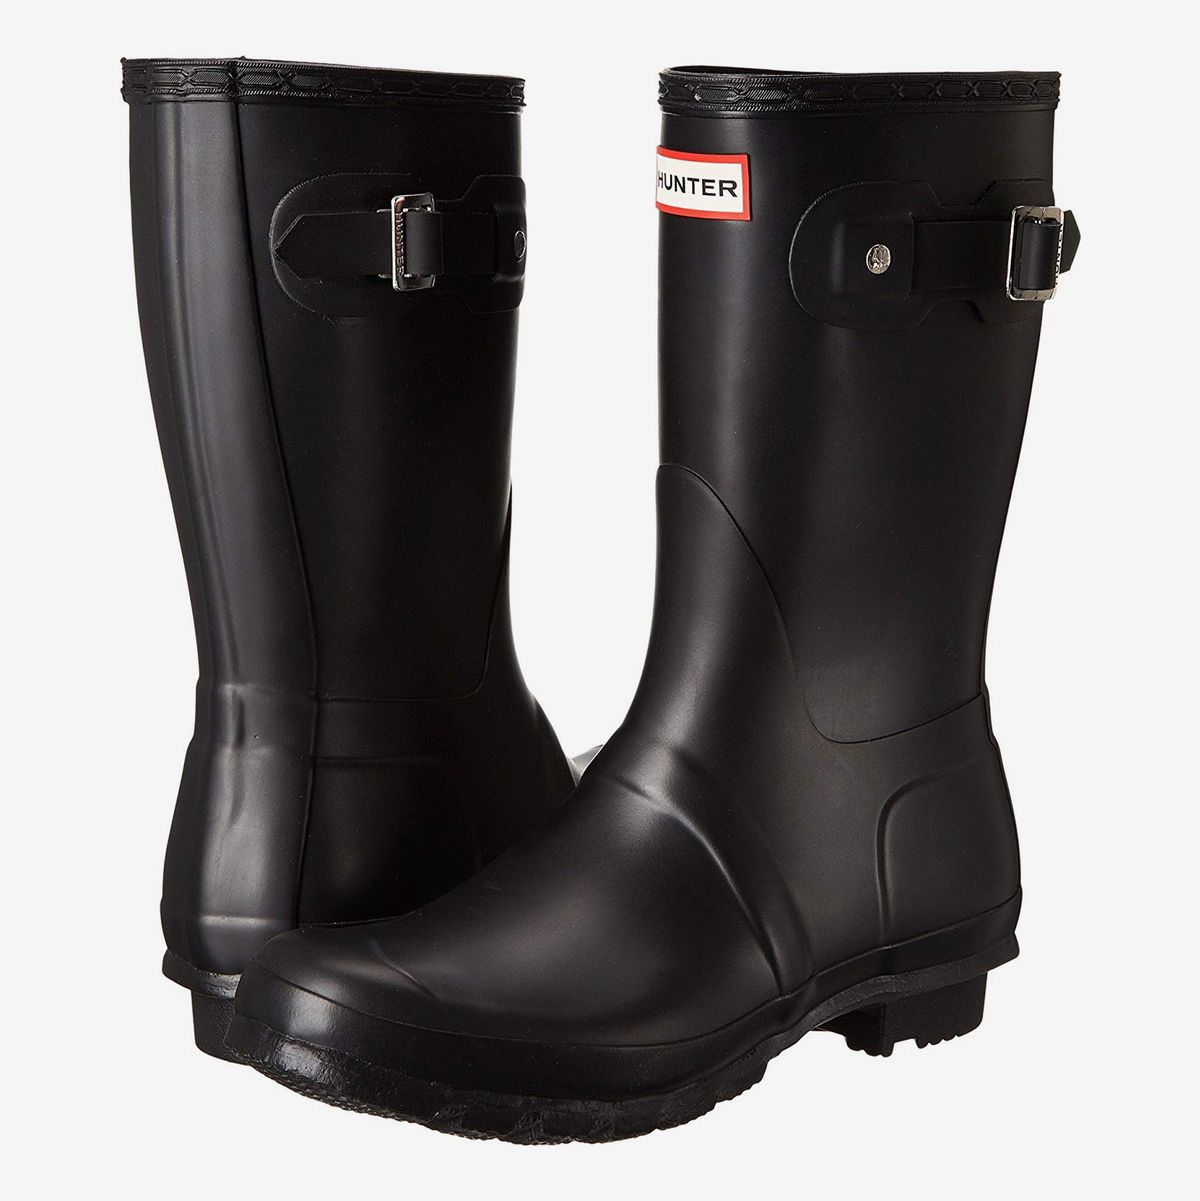 12 Best Rubber Rain Boots for Women 